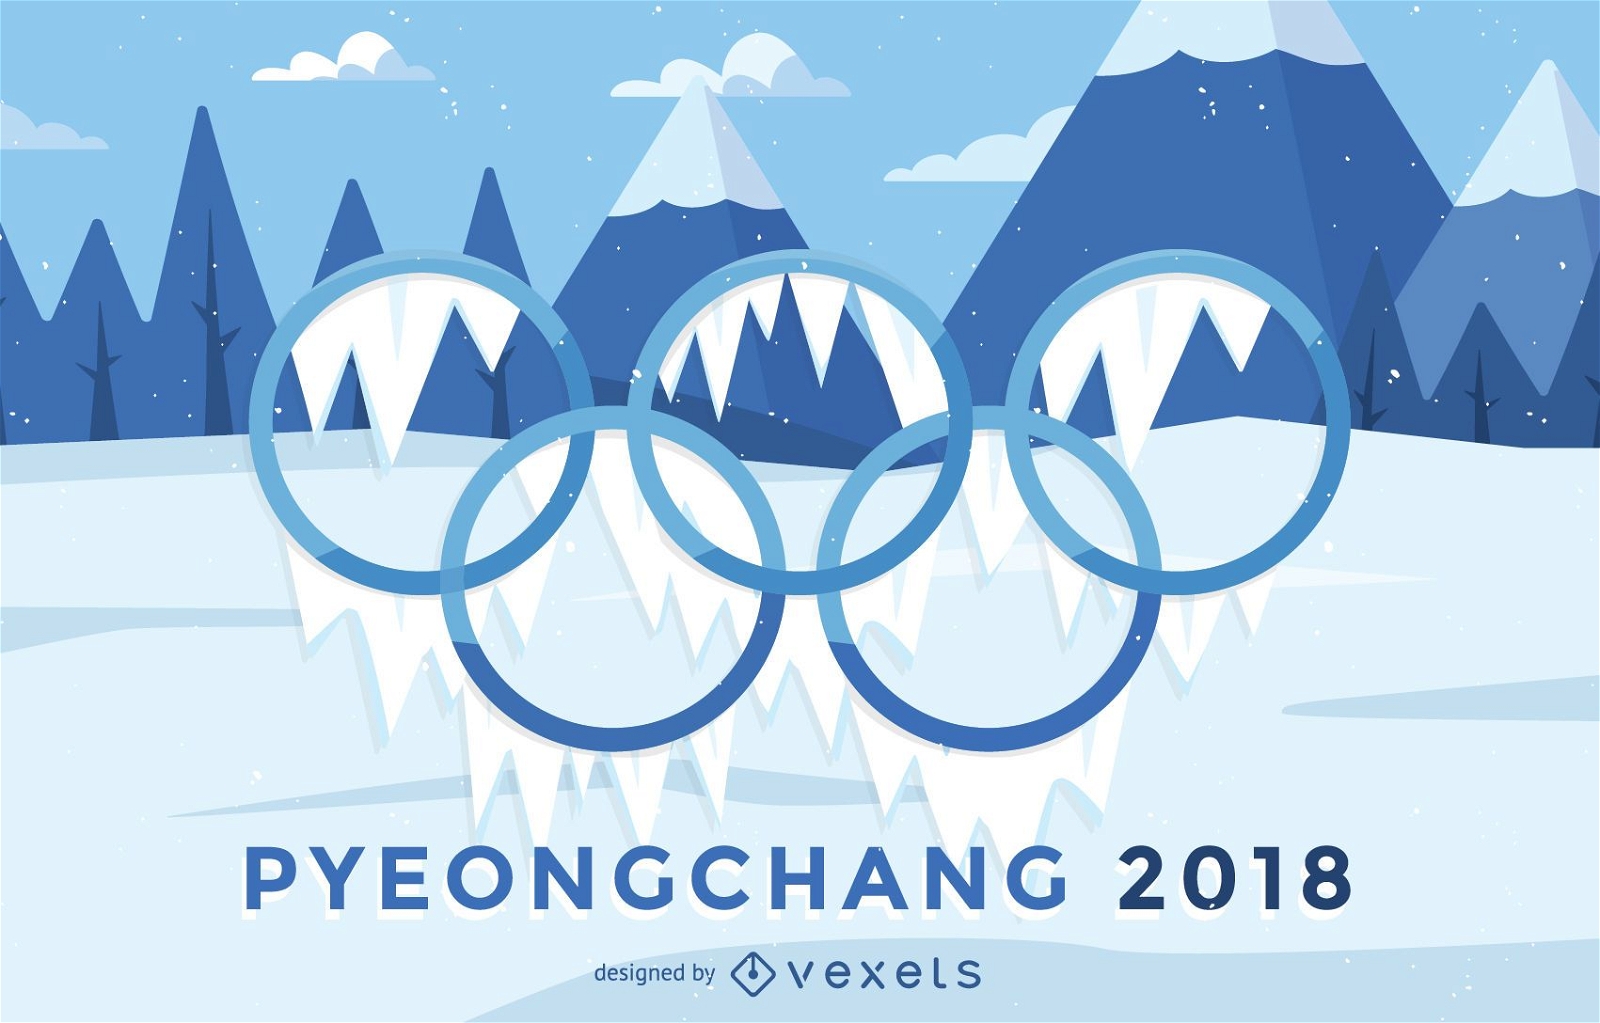 P?ster dos Jogos Ol?mpicos de Inverno de 2018